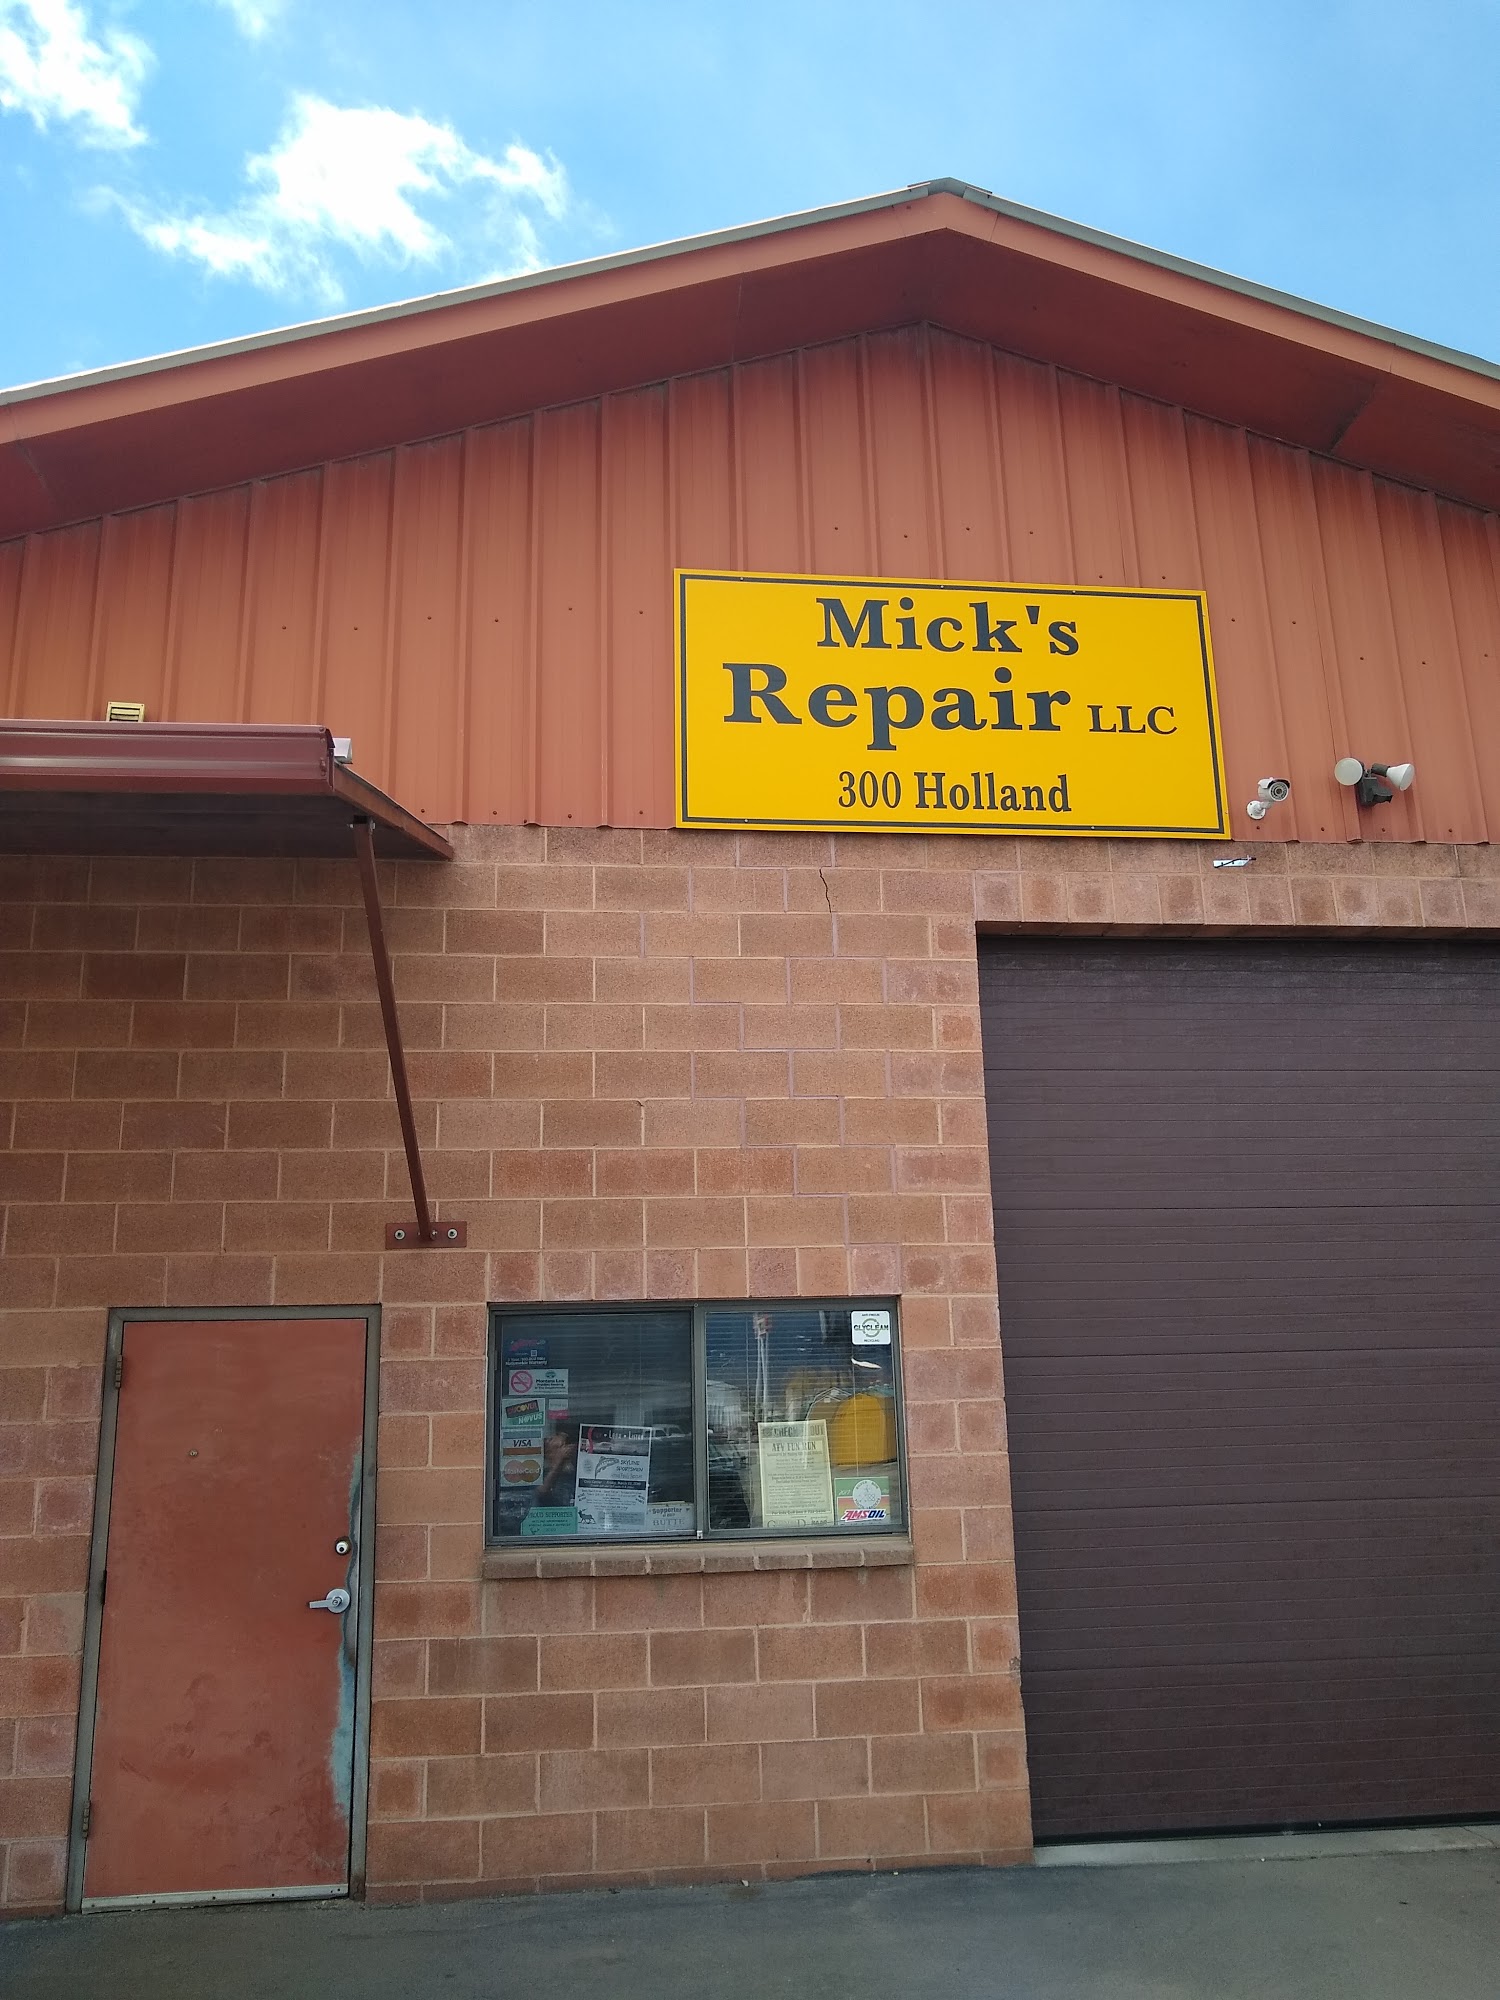 Mick's Repair LLC